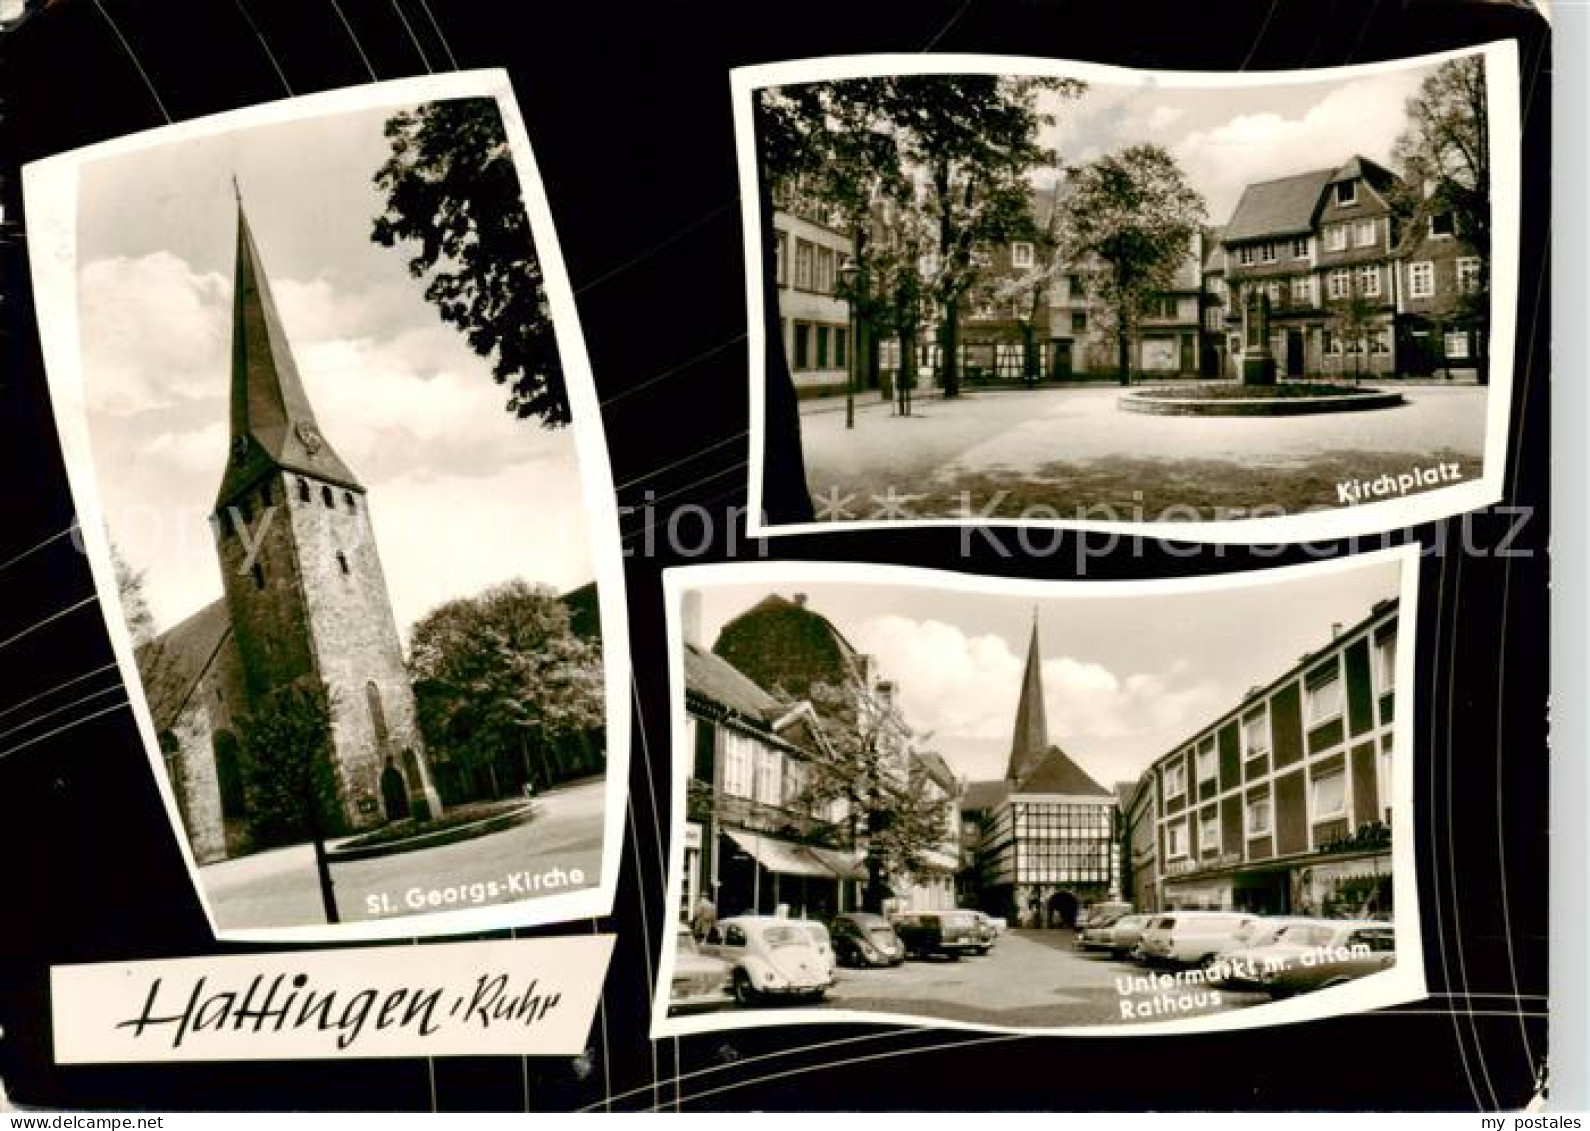 73855302 Hattingen  Ruhr St. Georgskirche Kirchplatz Untermarkt Rathaus  - Hattingen